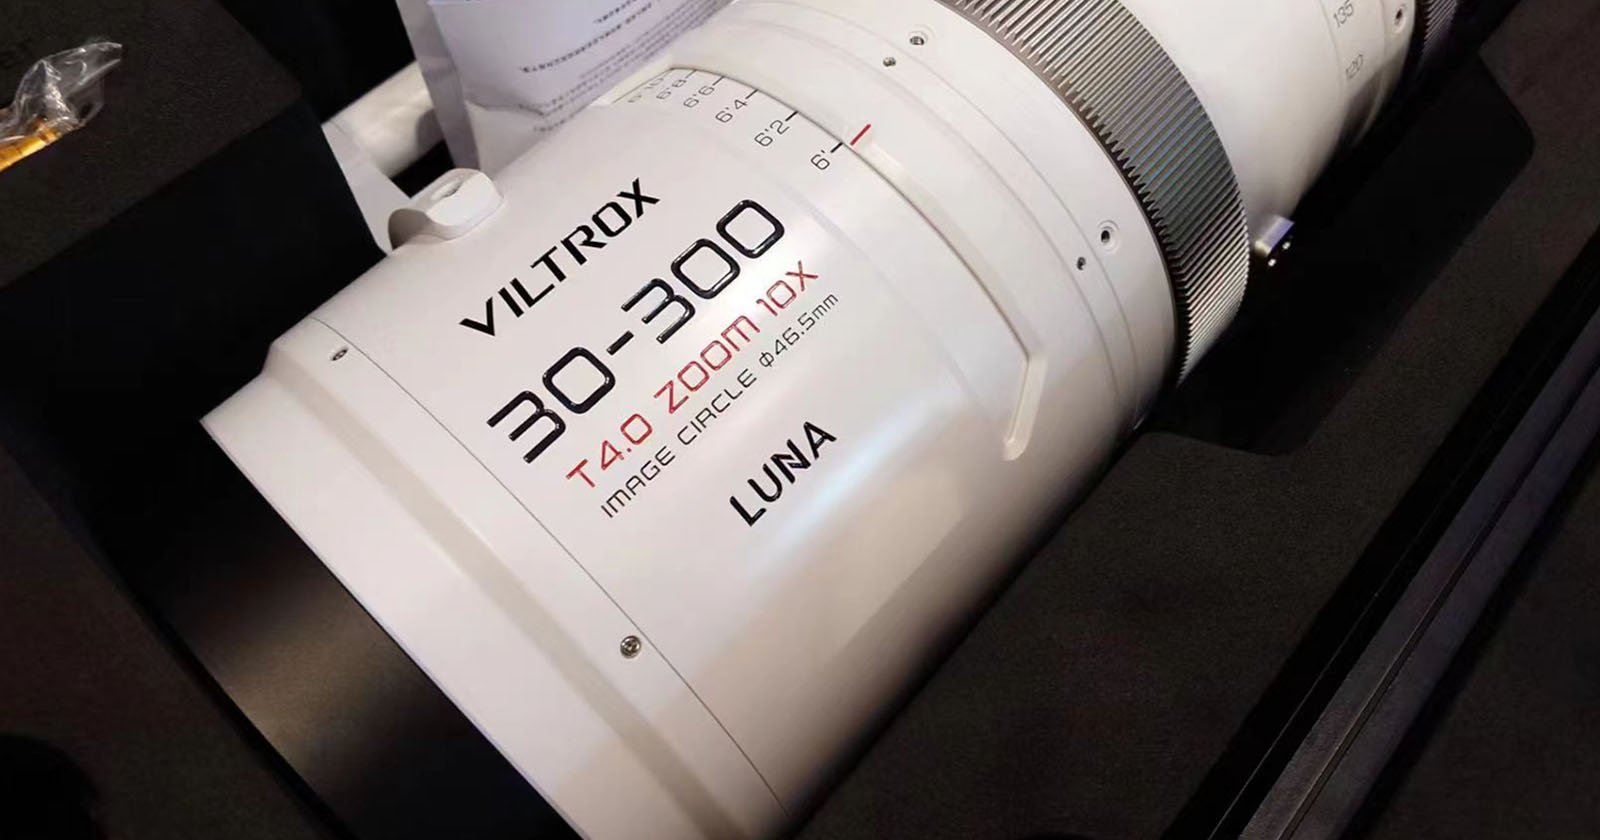 Viltrox Teases Wild 30-300mm T4.0 Full-Frame Cine Lens